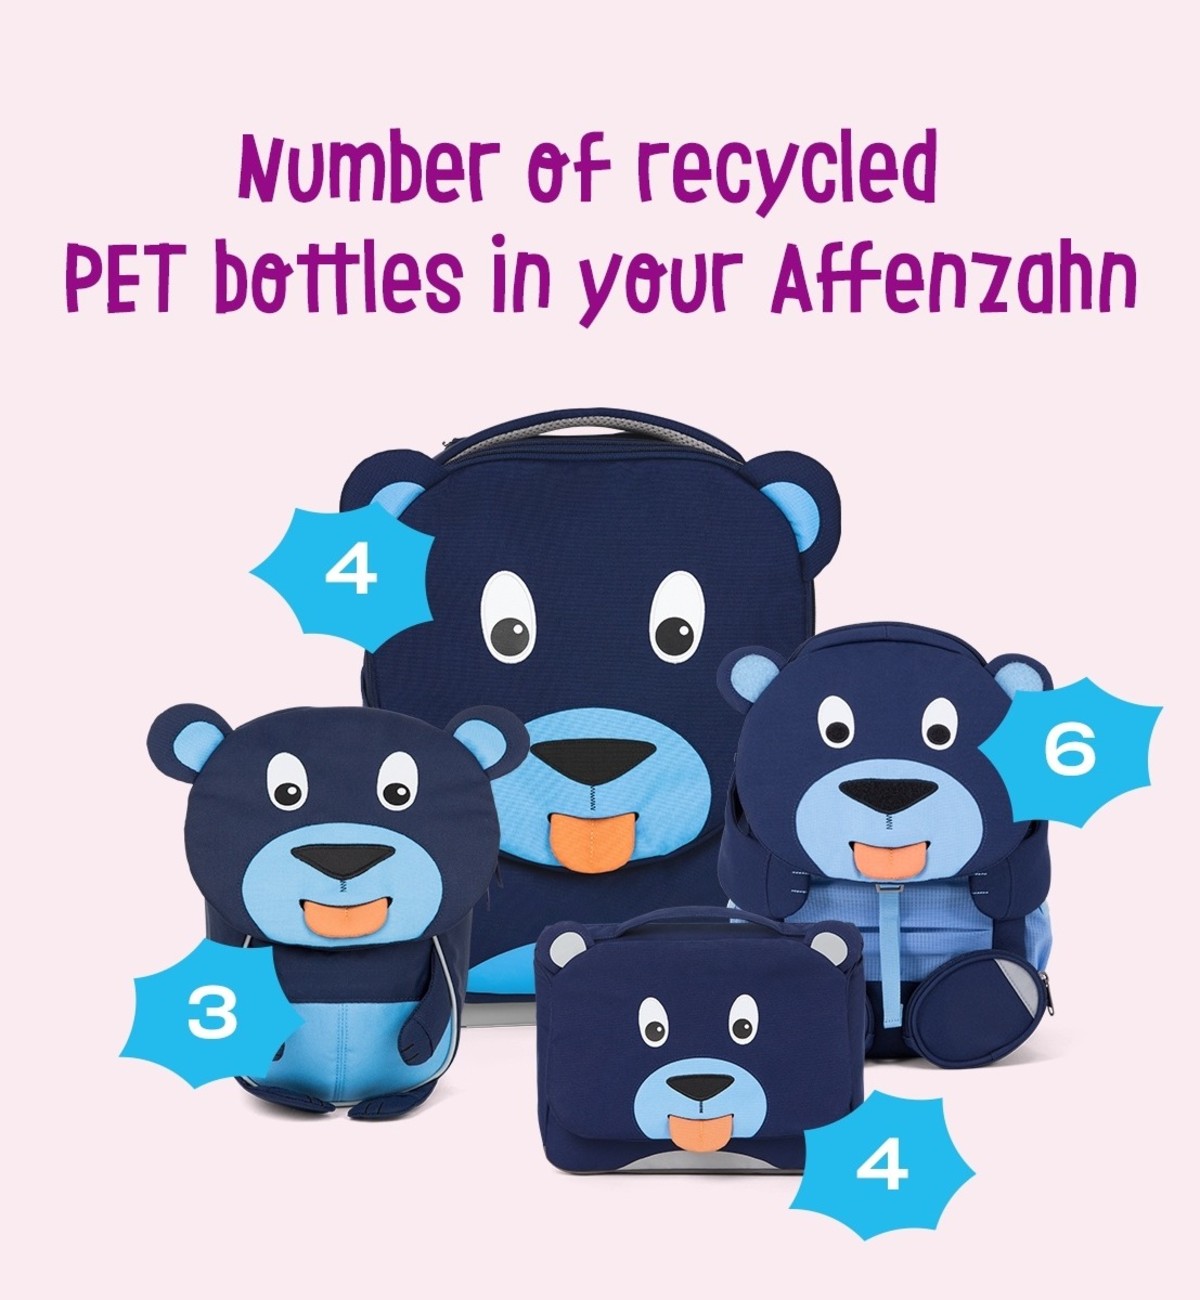 affenzahn-PET-Bottles 1200x1300_EN